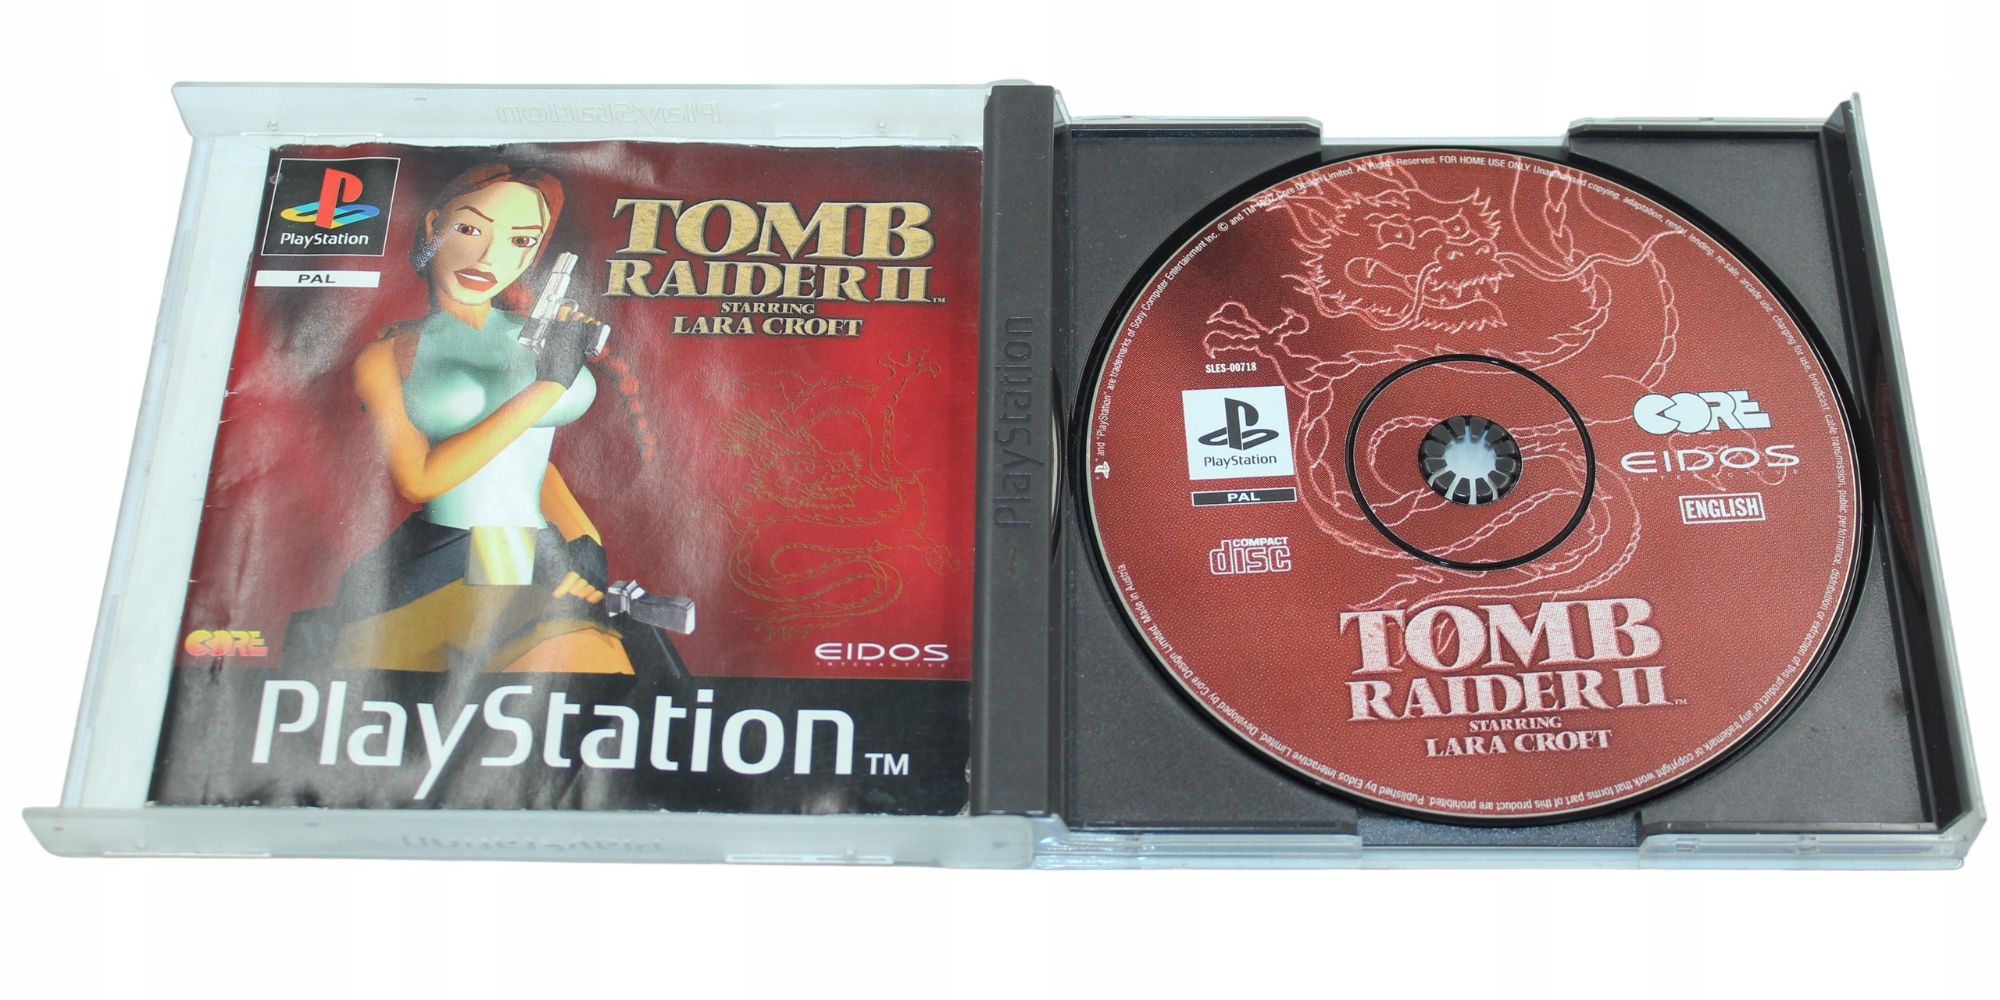 Tomb Raider II PS1 PSX PlayStation 1